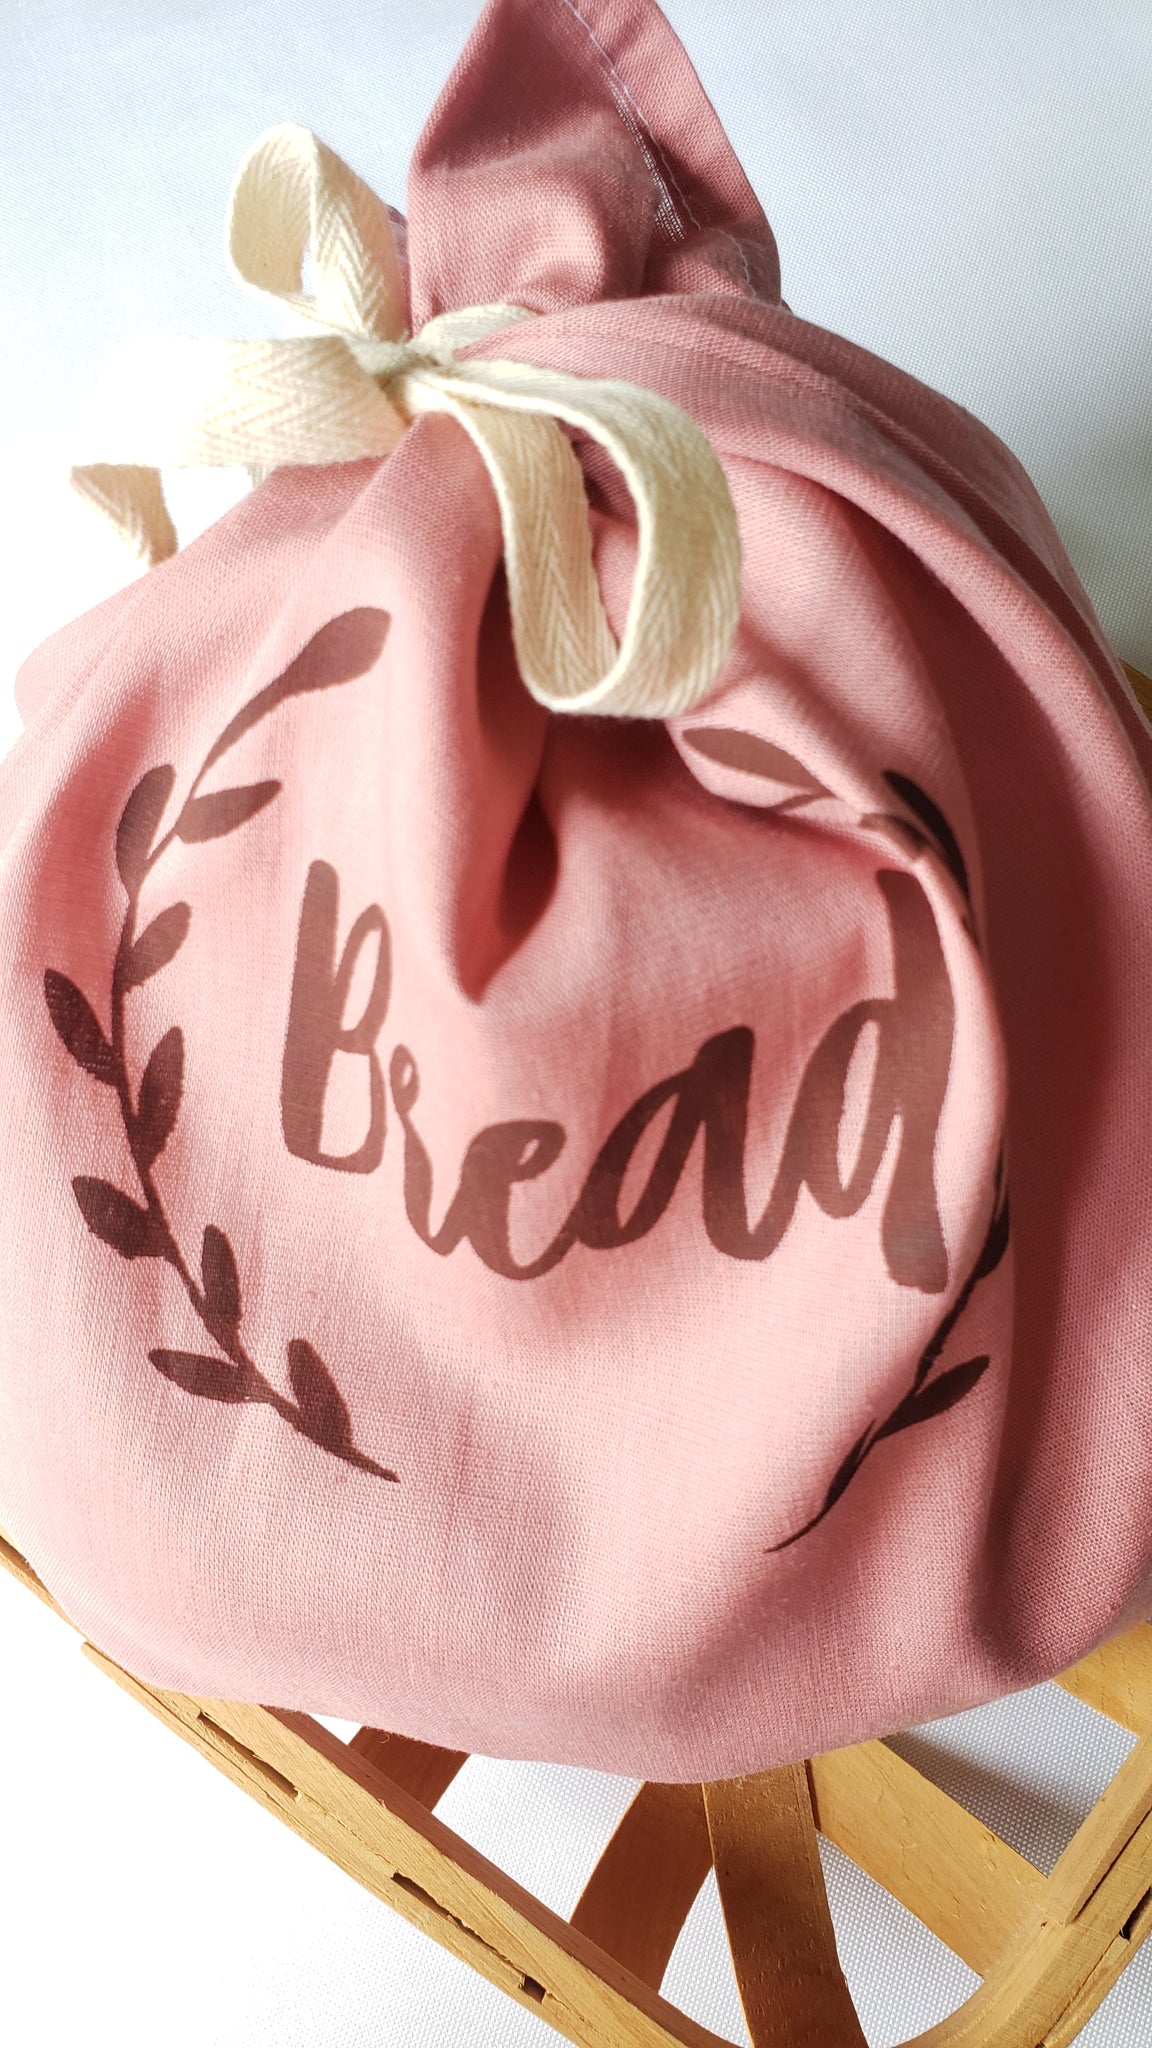 Bread Linen Storage Bag for Artisan & Handmade Goods